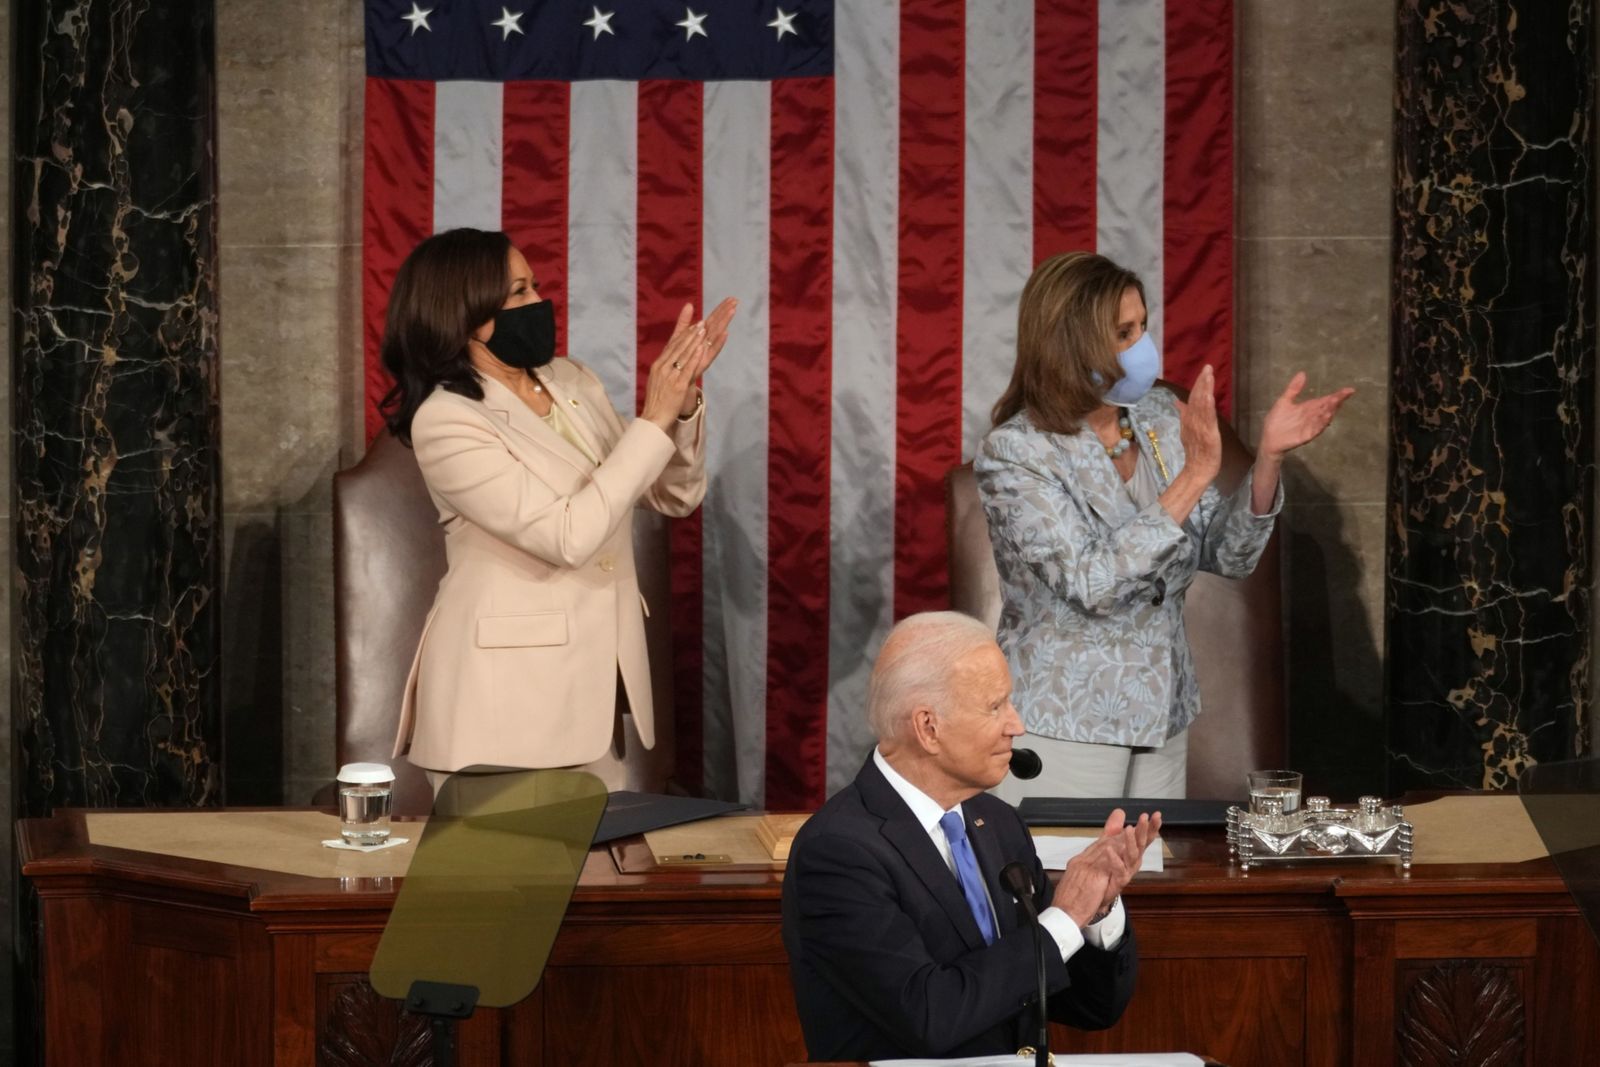 الرئيس الأميركي جو بايدن ونائبته كامالا هاريس (يسار) ورئيسة مجلس النواب نانسي بيلوسي يصفقون خلال إلقاء الرئيس خطابه أمام الكونغرس - 28 أبريل 2021 - Bloomberg